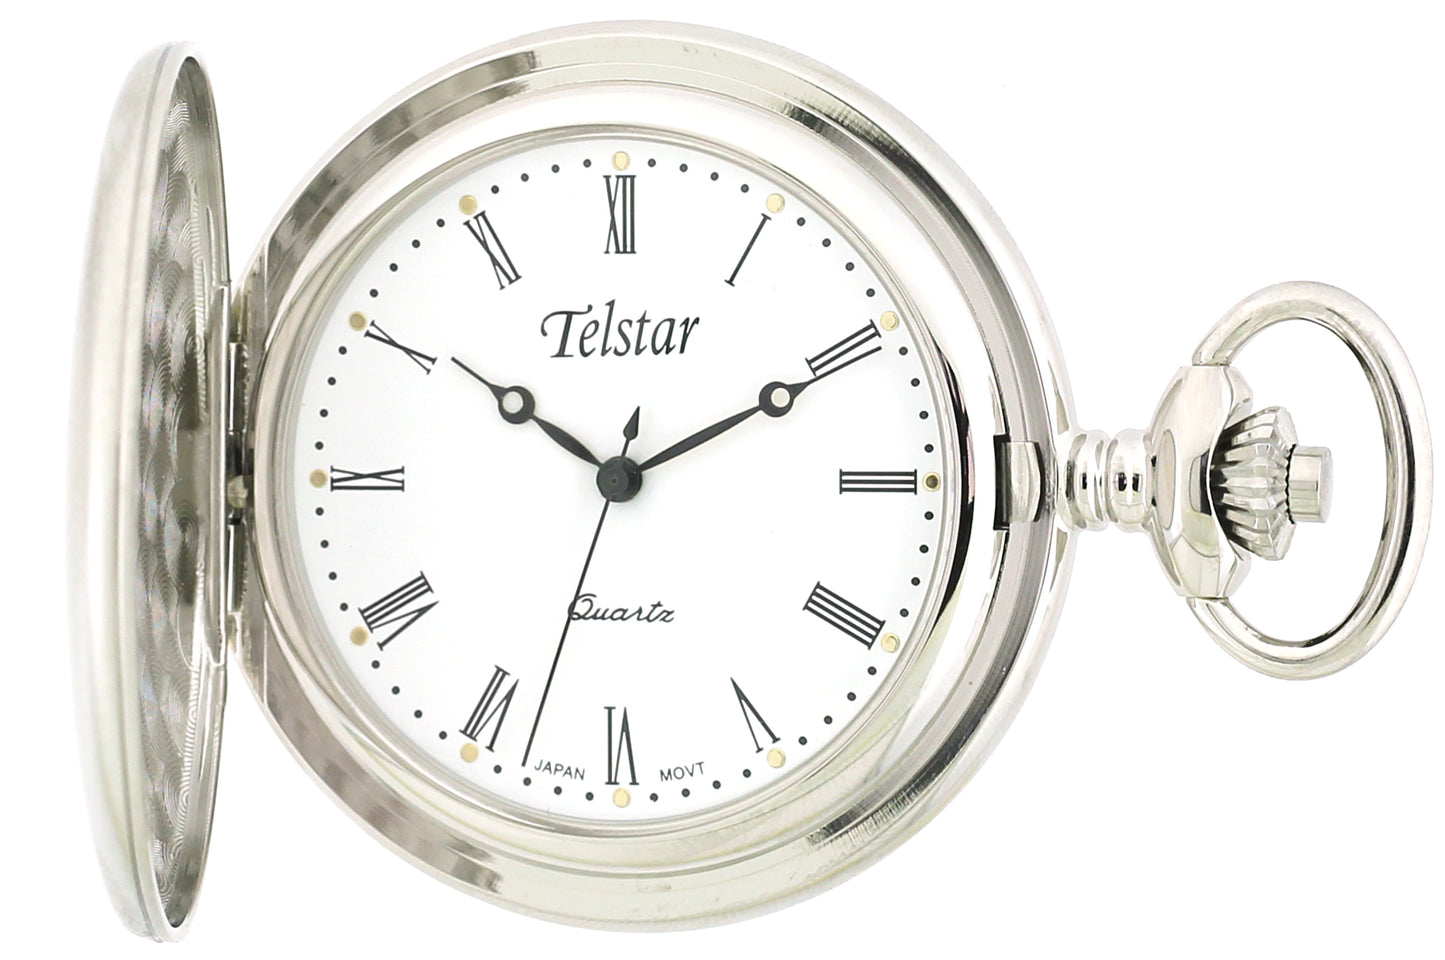 Telstar Pocket Watch